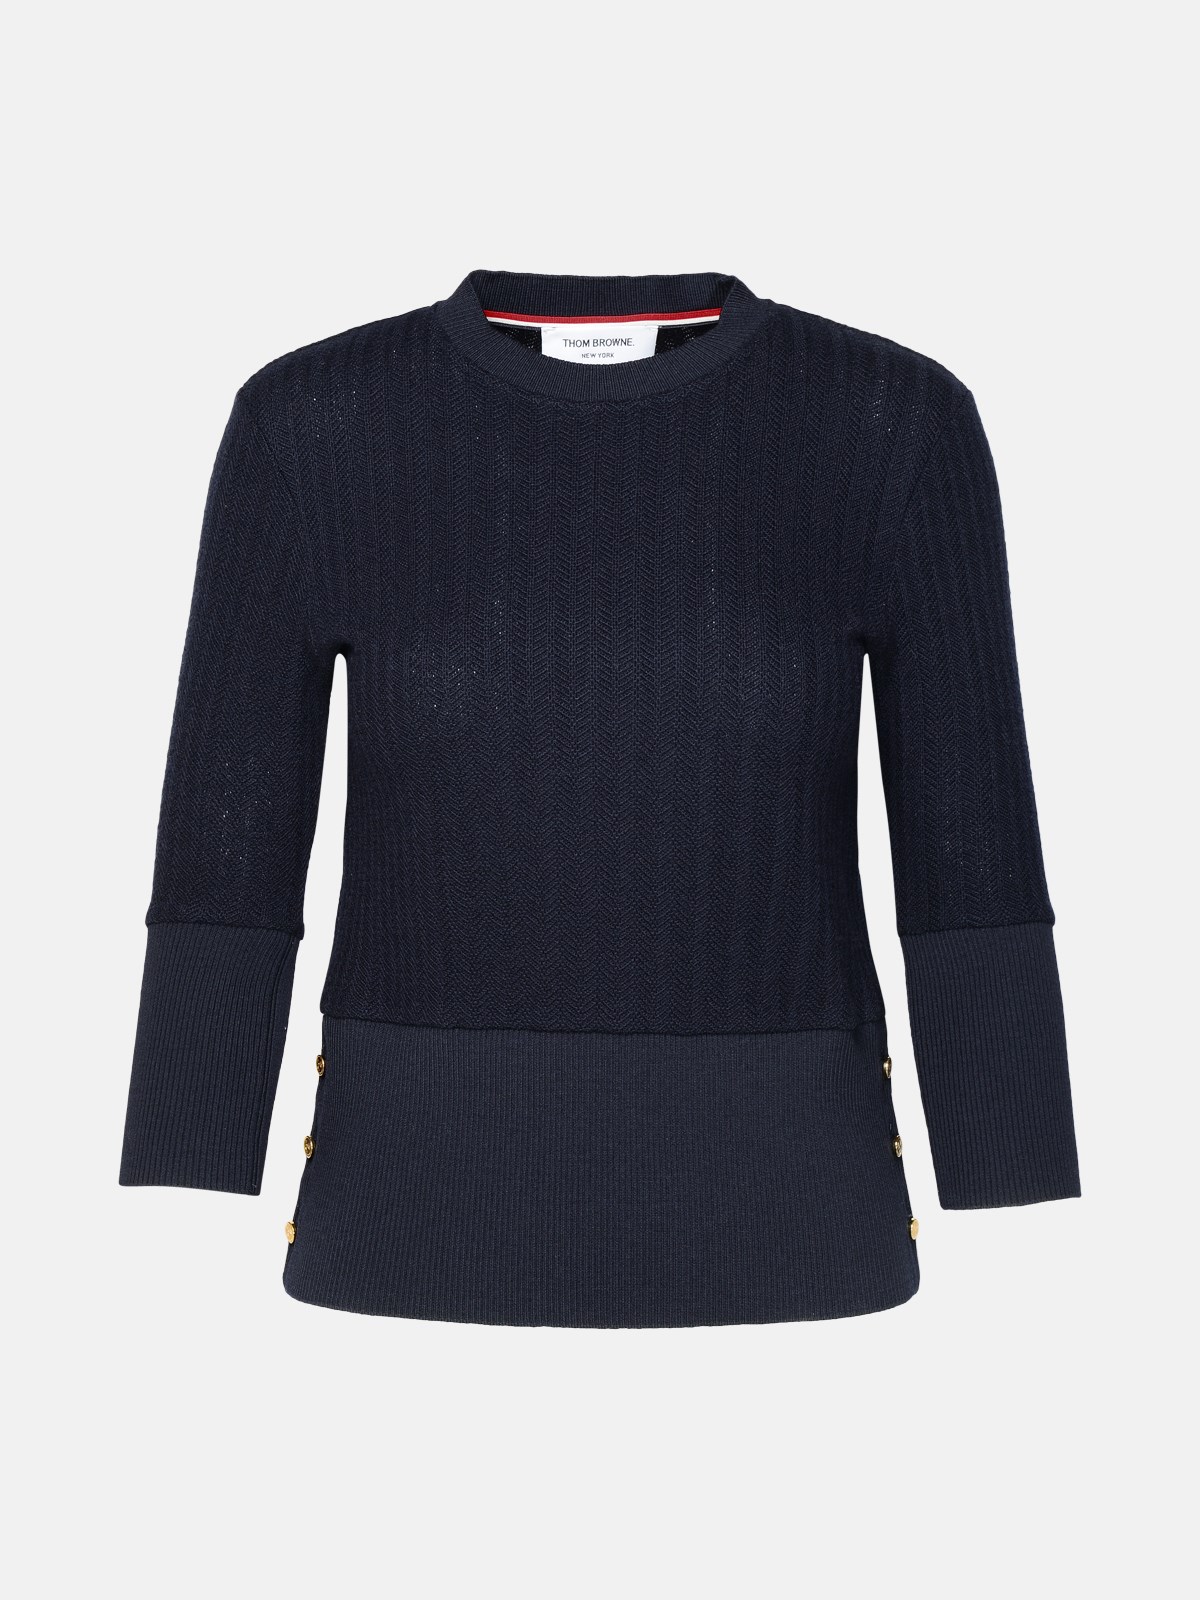 Thom Browne Navy Virgin Wool Sweater